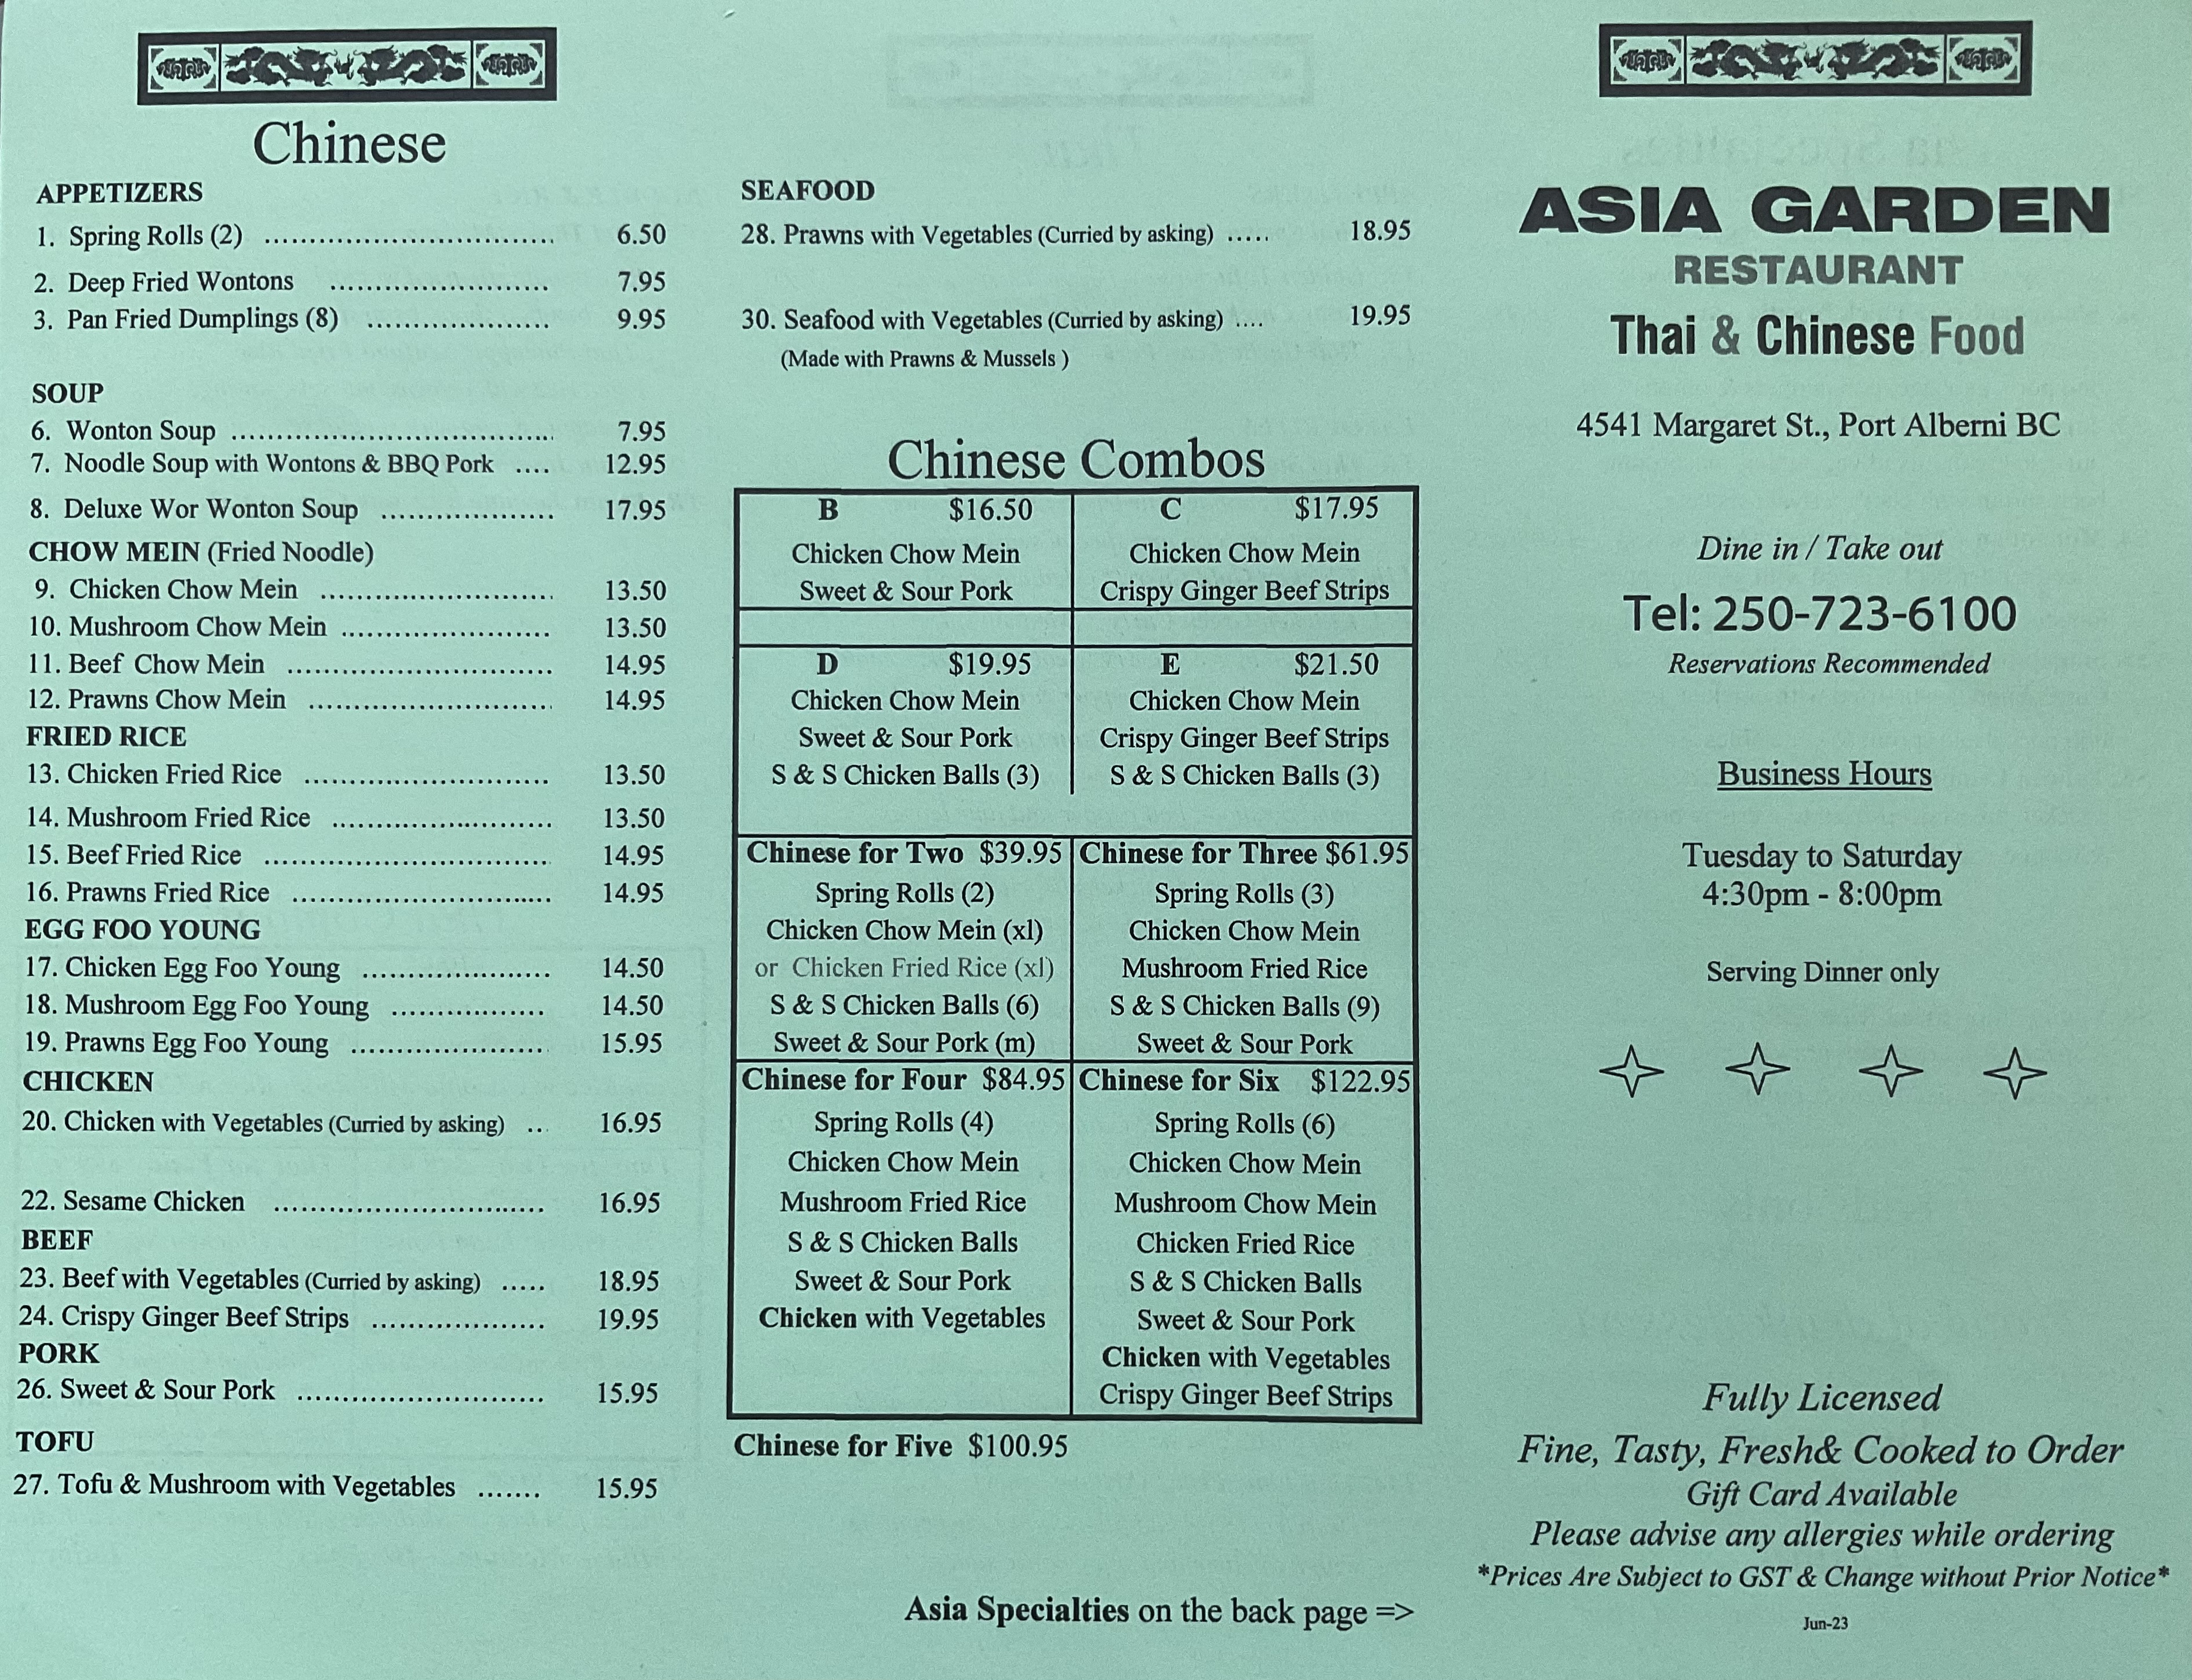 Asia Garden Restaurant 4541 Margaret St, Port Alberni, BC V9Y 6G8